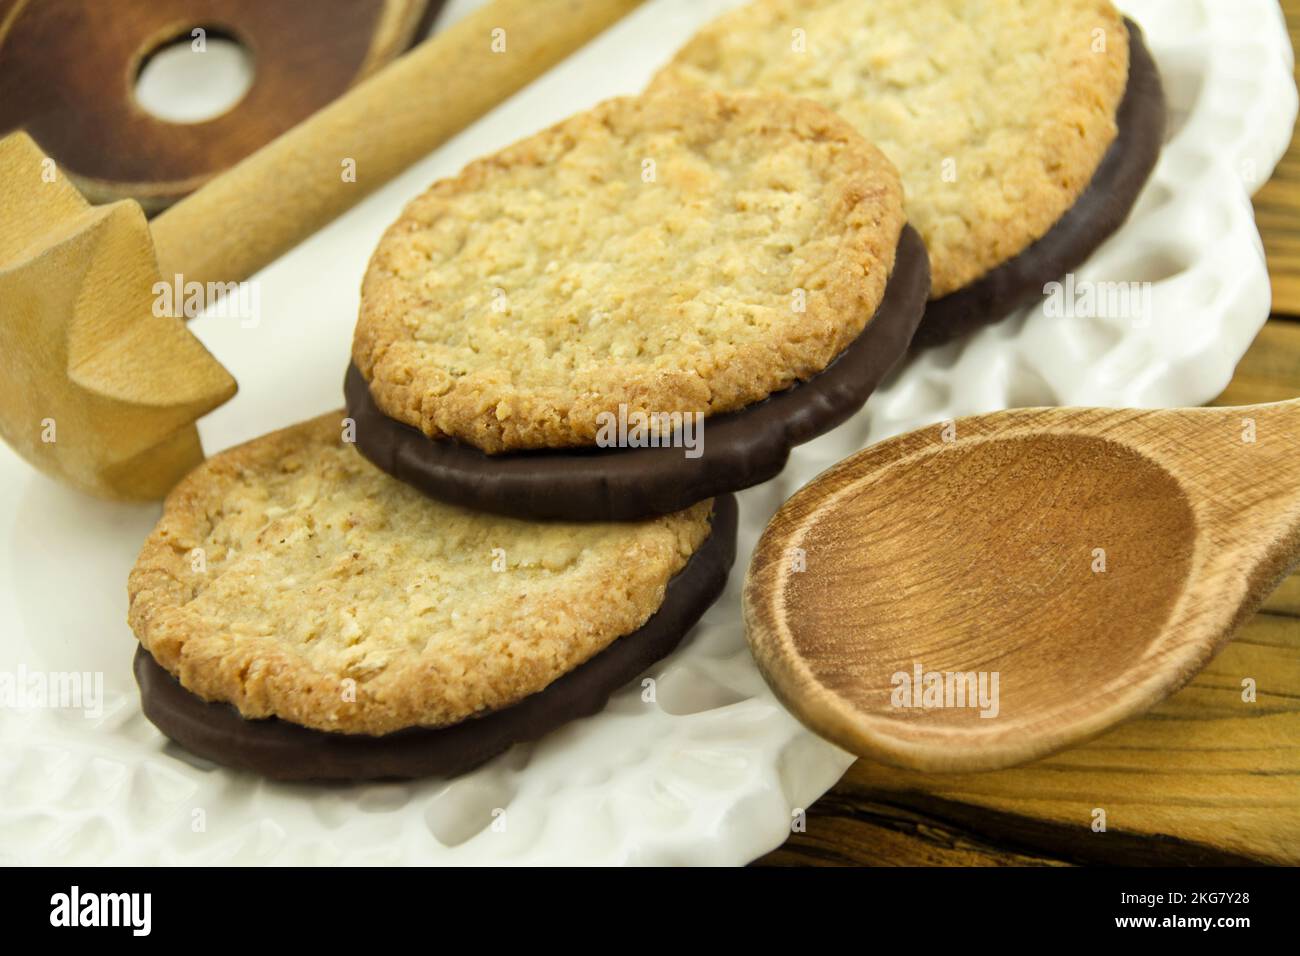 Torte OAT con cioccolato e cucina in stile country con utensili in legno Foto Stock